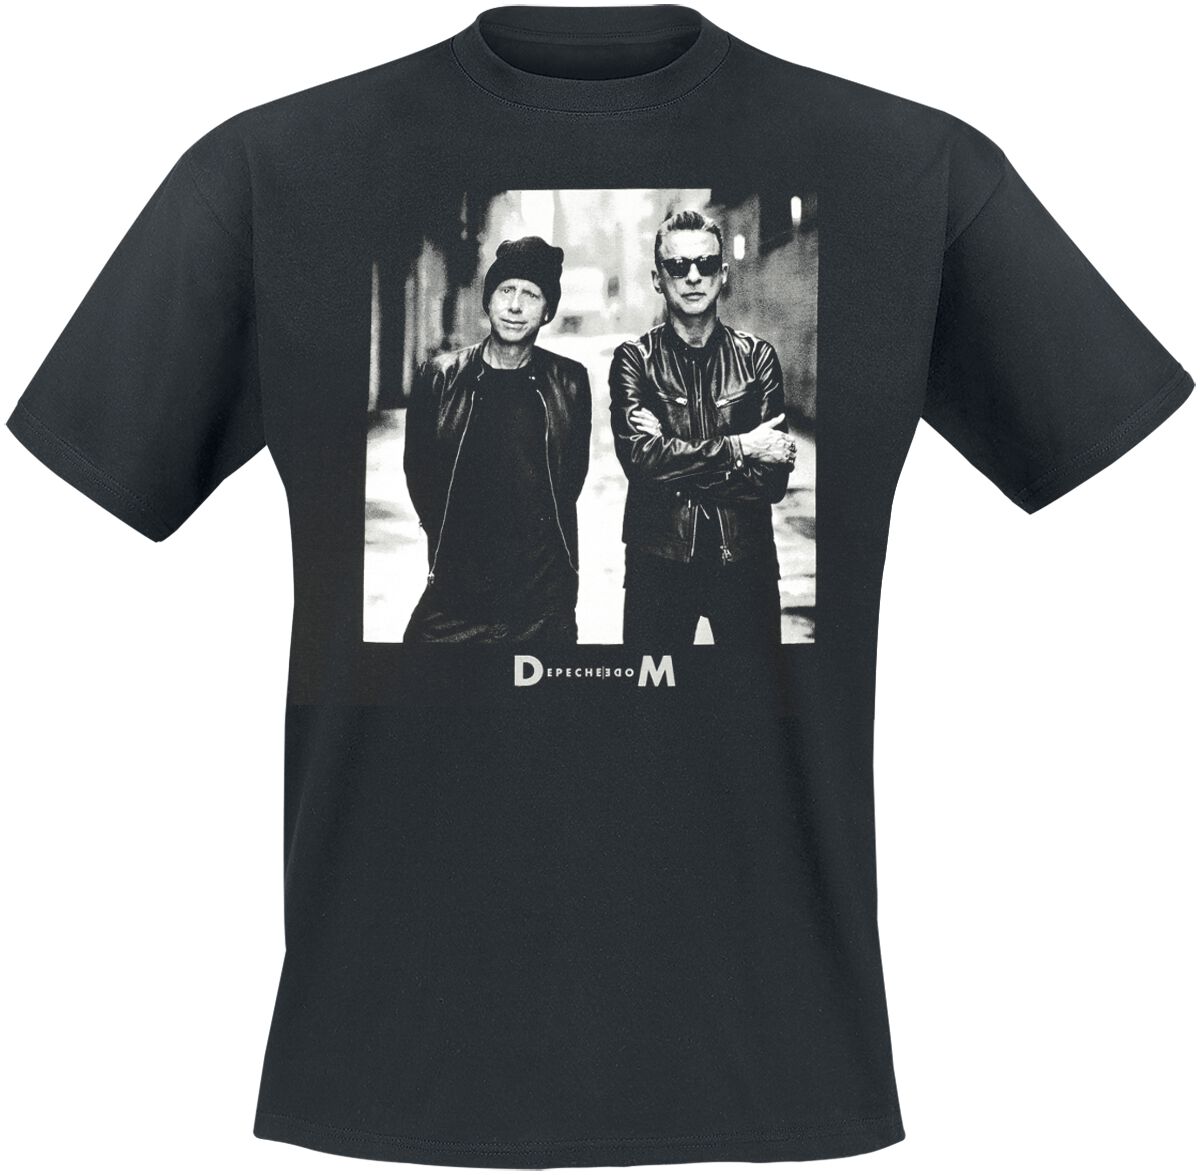 Depeche Mode T-Shirt - Alley Photo - S bis XL - für Männer - Größe M - schwarz  - Lizenziertes Merchandise!